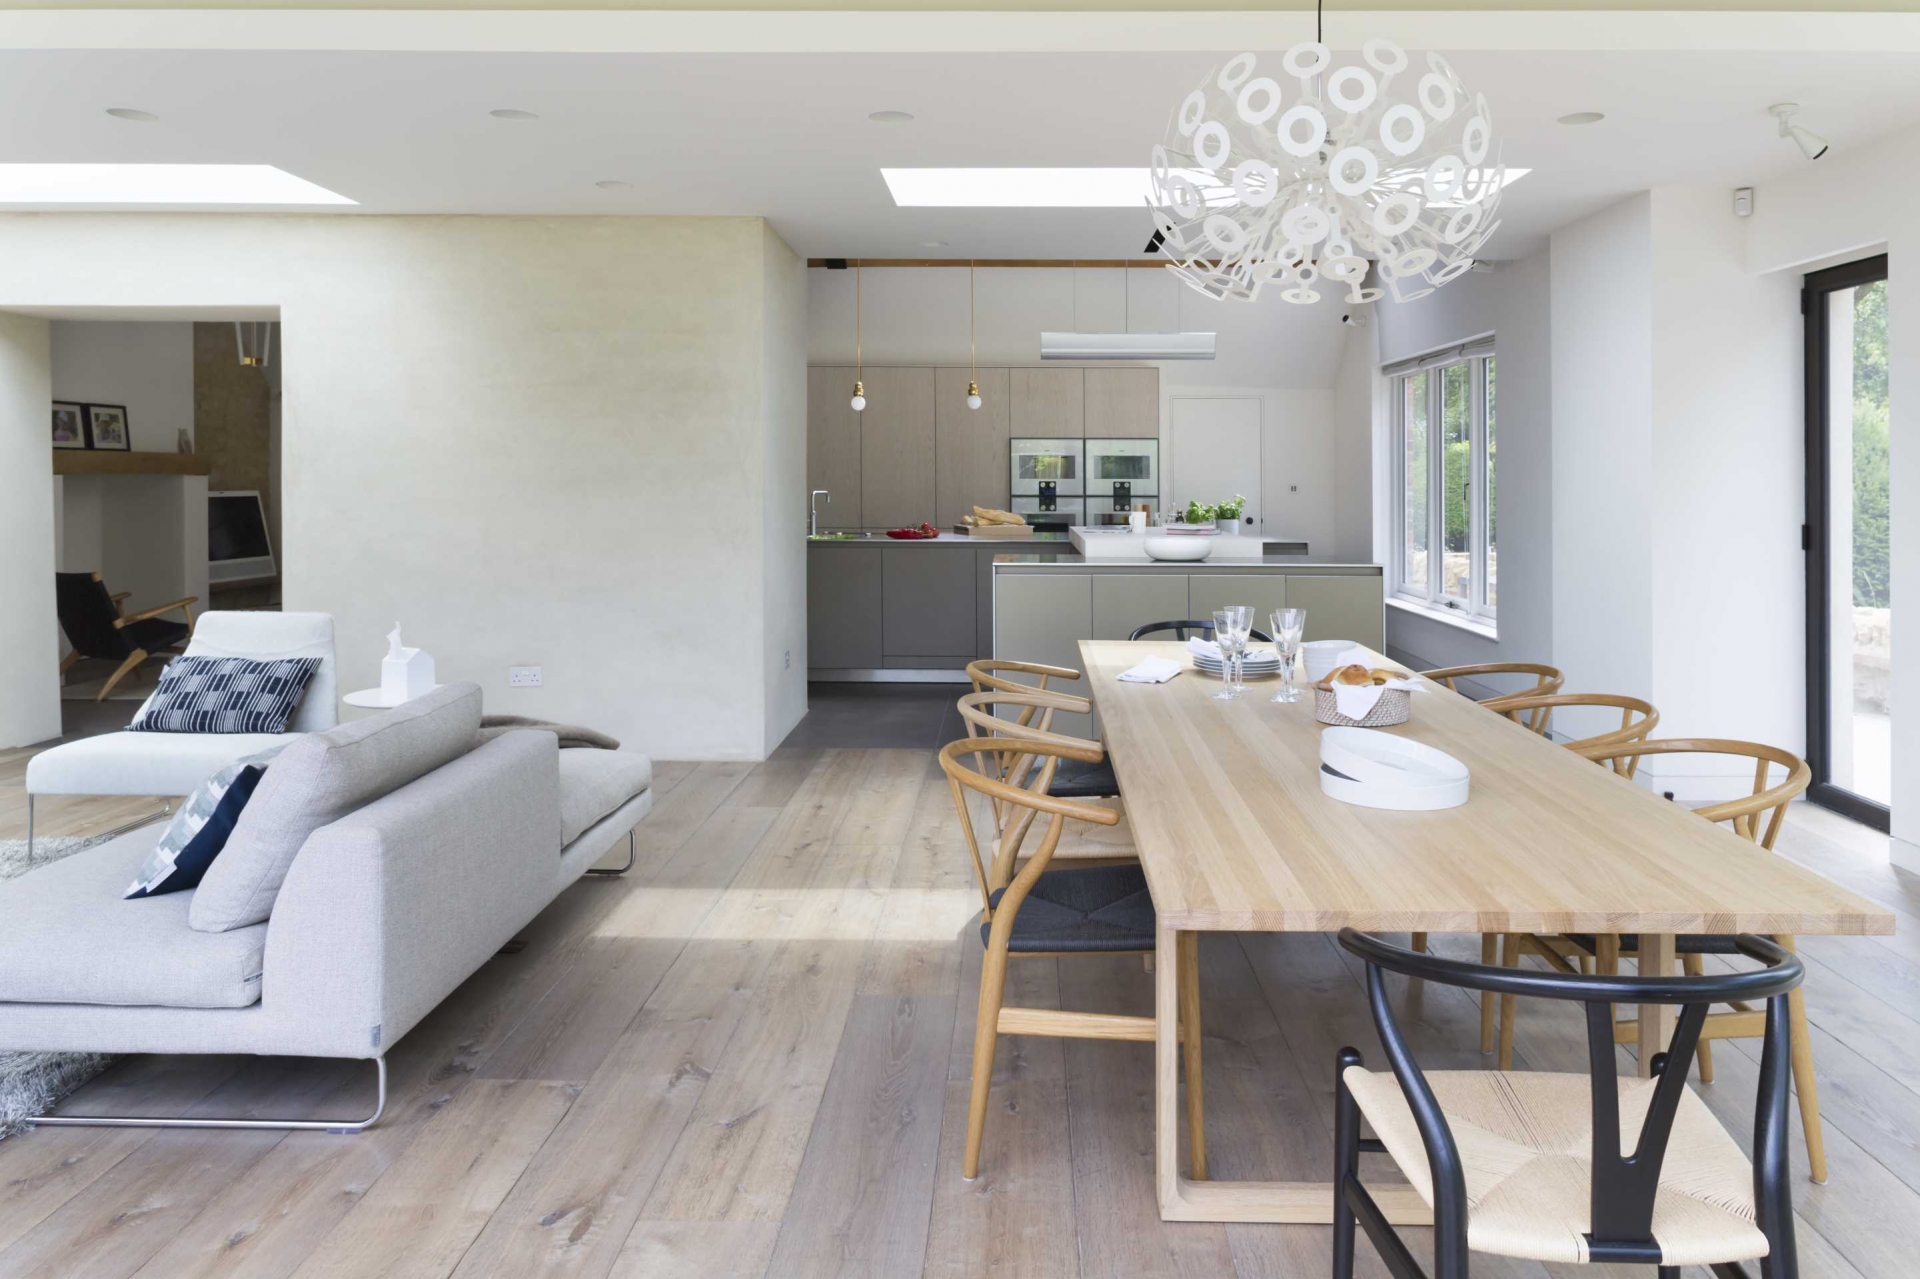 Phòng ăn bố trí trên không gian thiết kế mở bao gồm cả phòng khách và phòng bếp. Và chính yếu tố vật liệu nội thất đã tạo nên sự phân vùng tự nhiên cho các khu vực, nổi bật nhất là bộ bàn ghế gỗ tuy đơn giản nhưng lại rất thoải mái tại phòng ăn này.